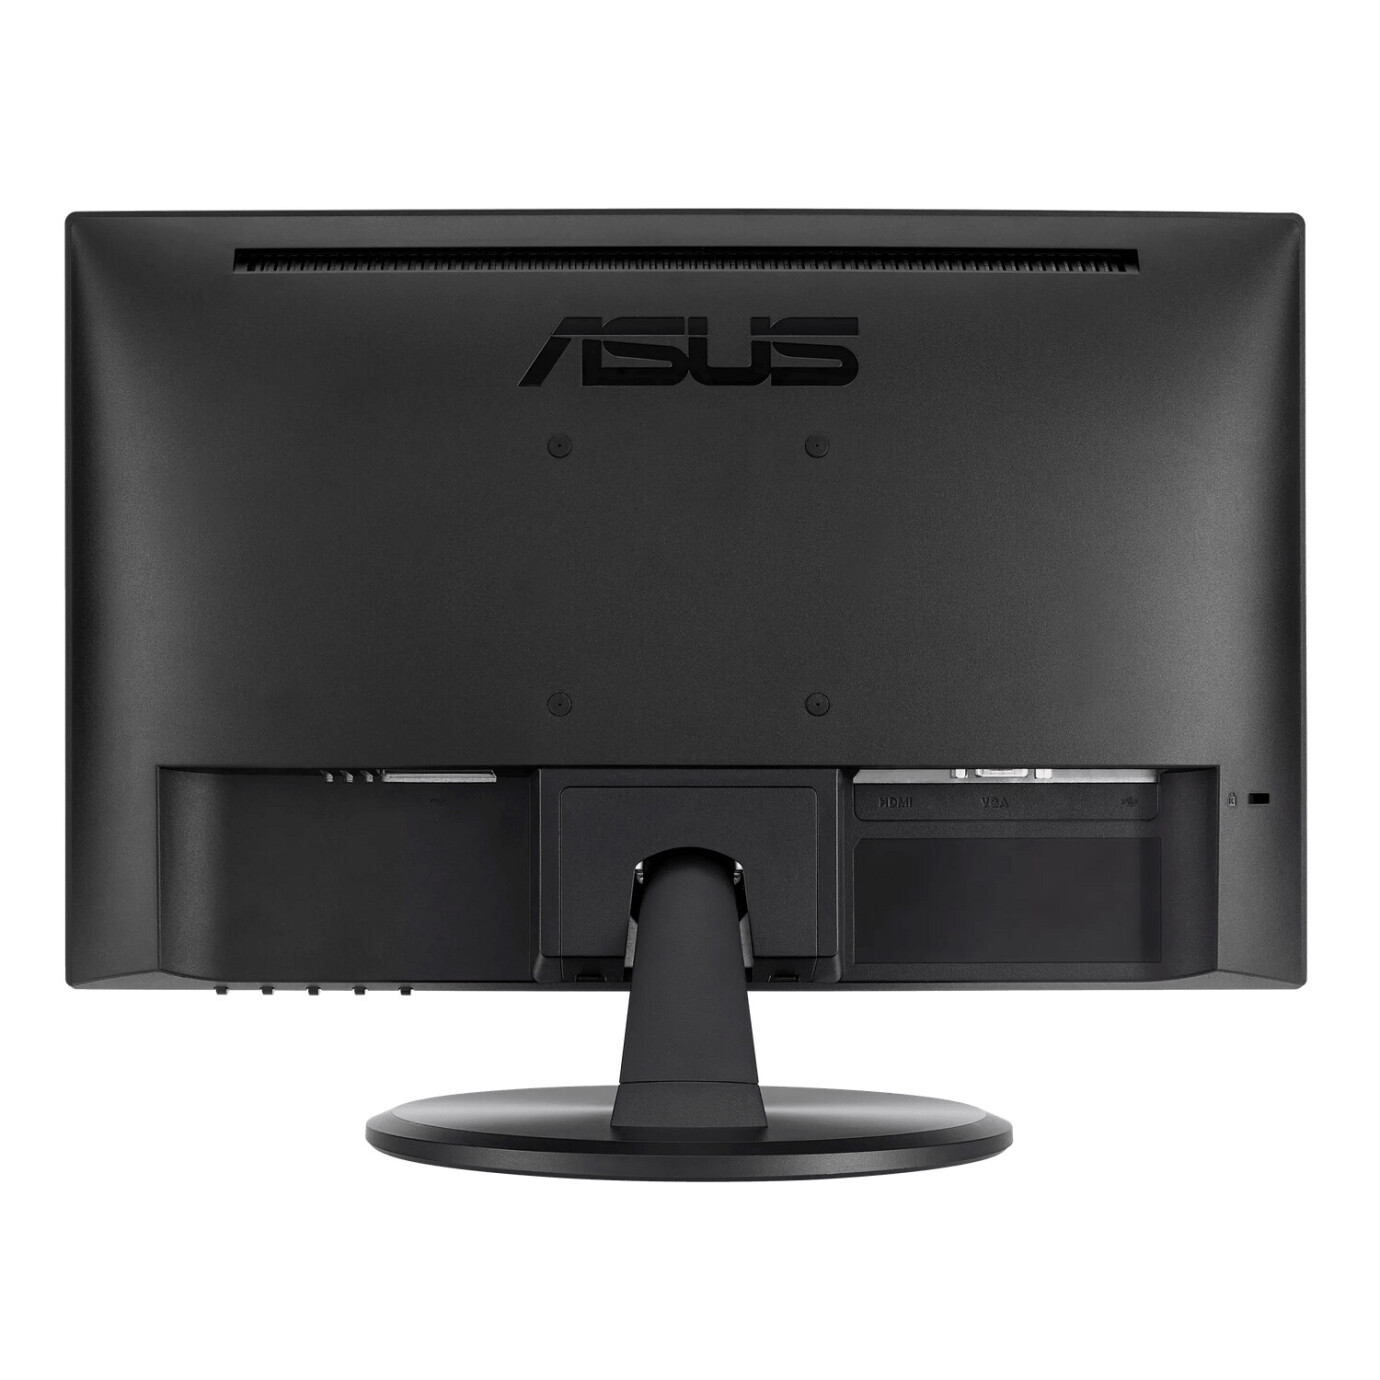 Vorschau: Asus VT168HR Touch Monitor